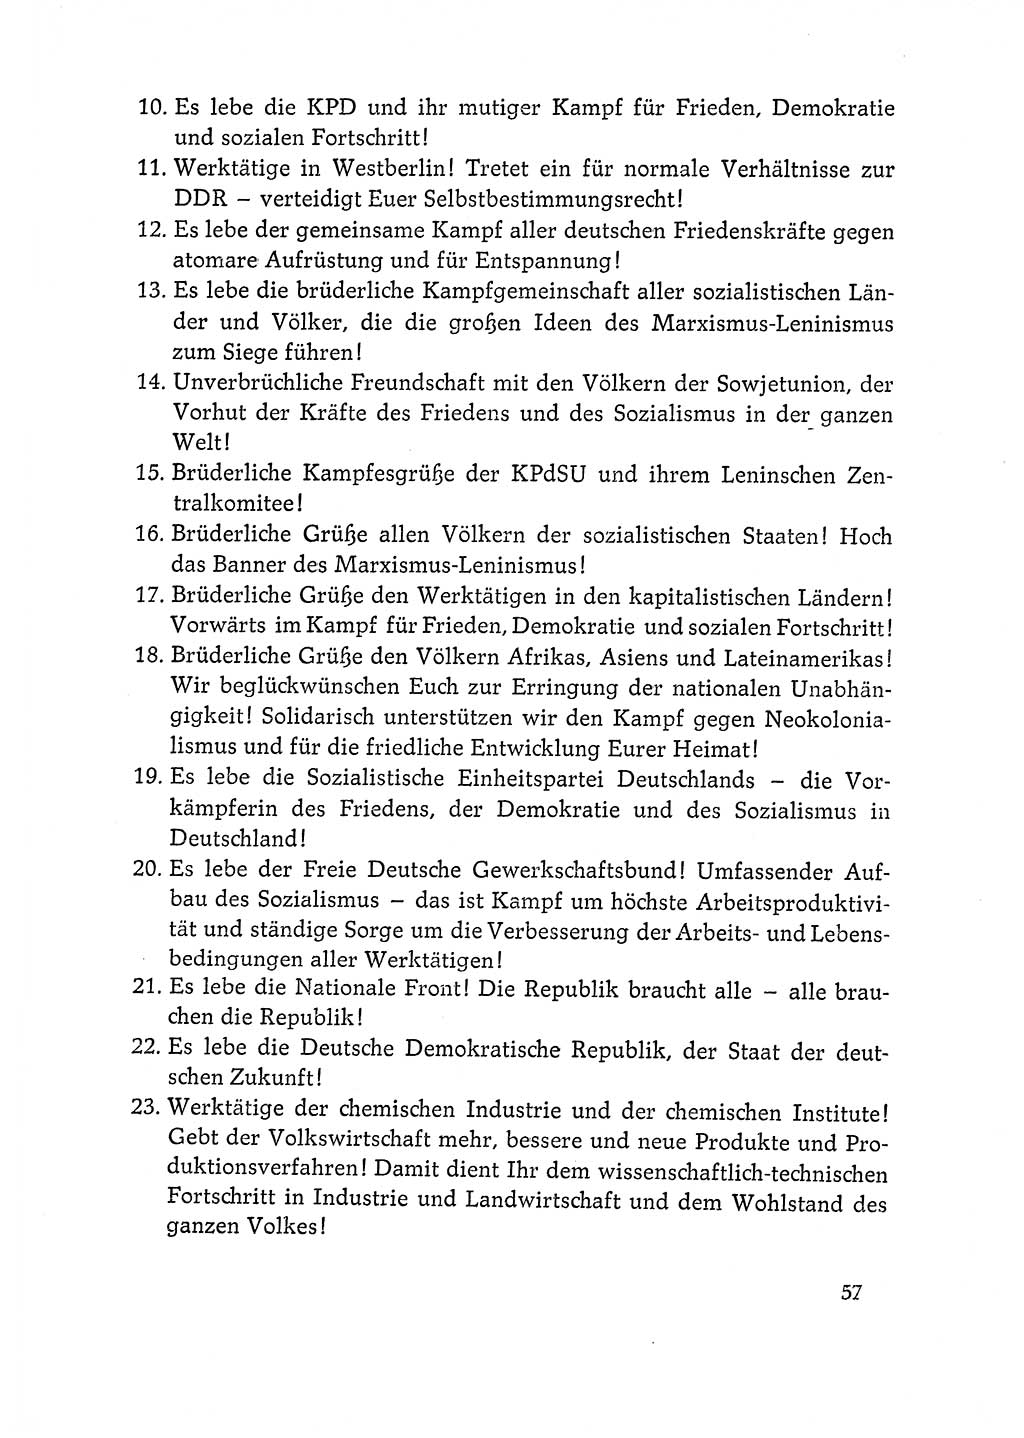 Dokumente der Sozialistischen Einheitspartei Deutschlands (SED) [Deutsche Demokratische Republik (DDR)] 1964-1965, Seite 57 (Dok. SED DDR 1964-1965, S. 57)